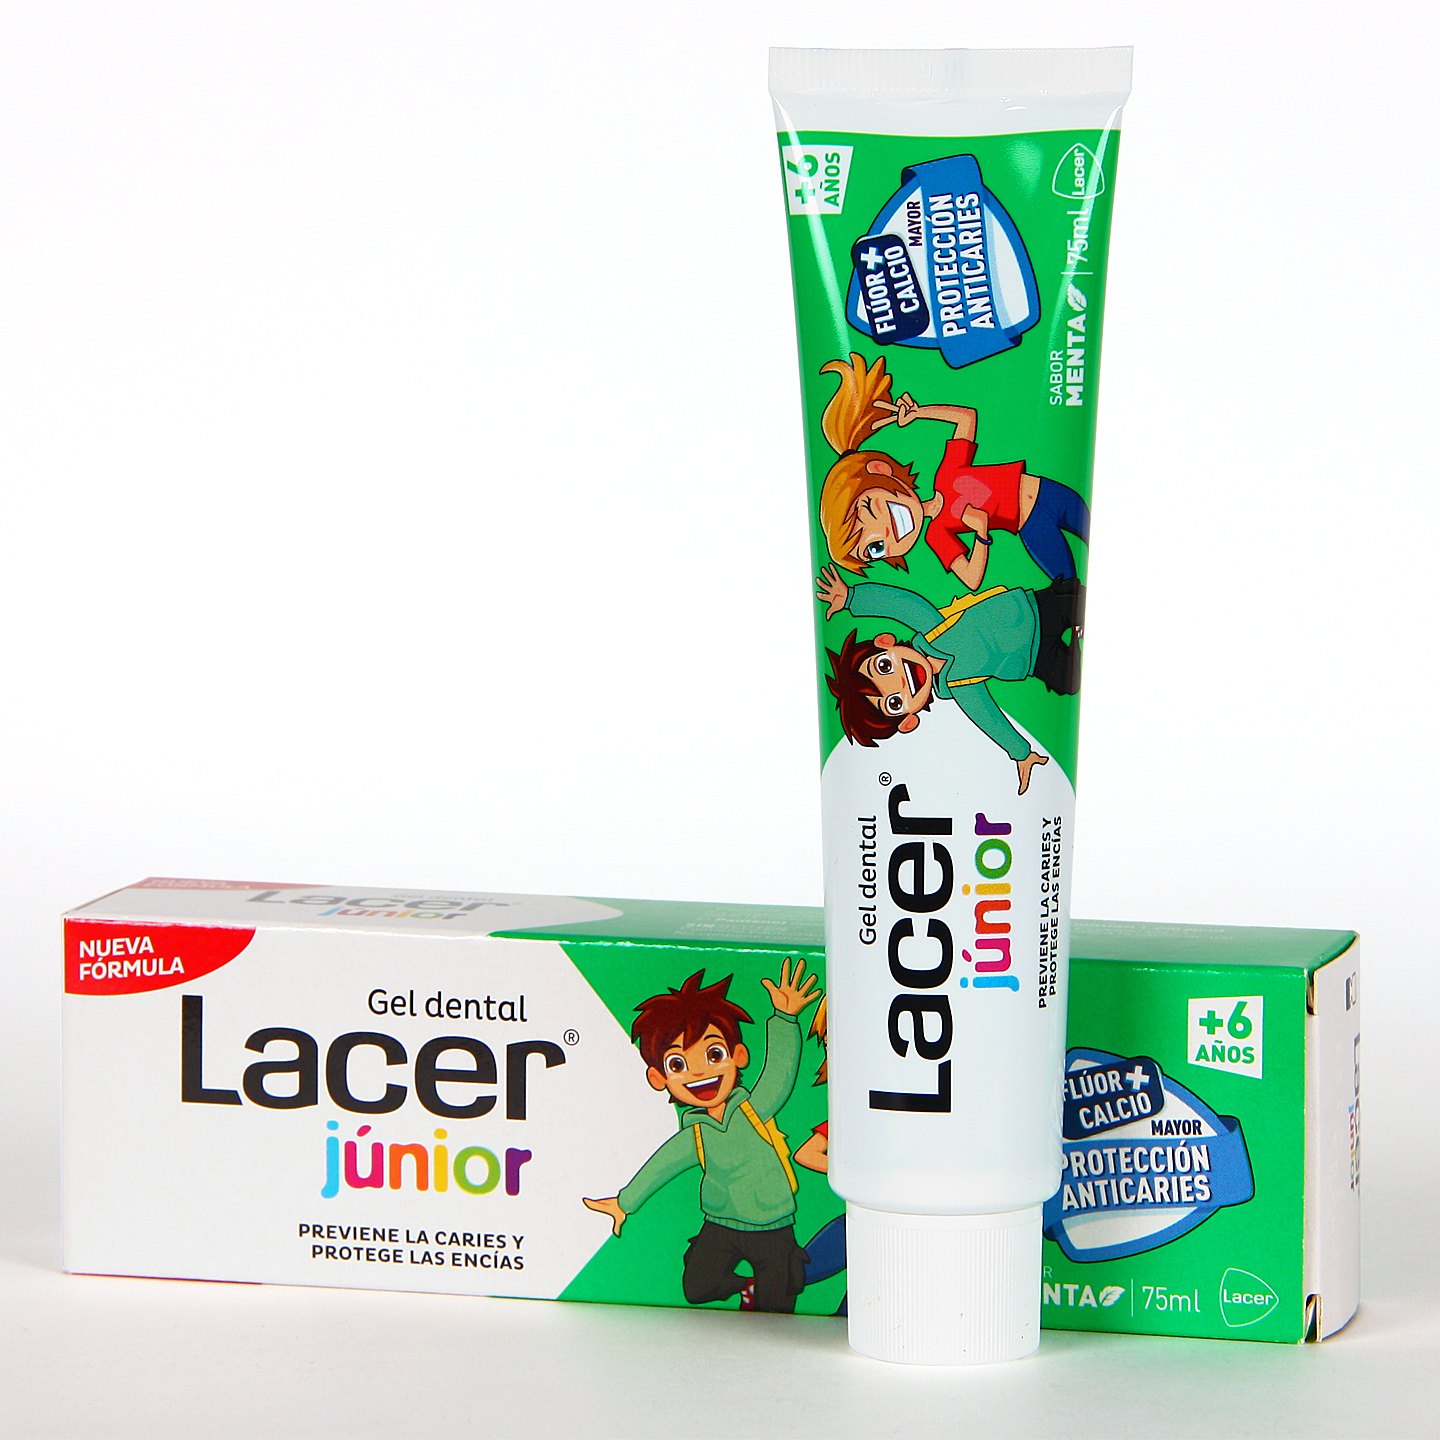 Lacer junior gel dentífrico sabor menta con flúor y calcio